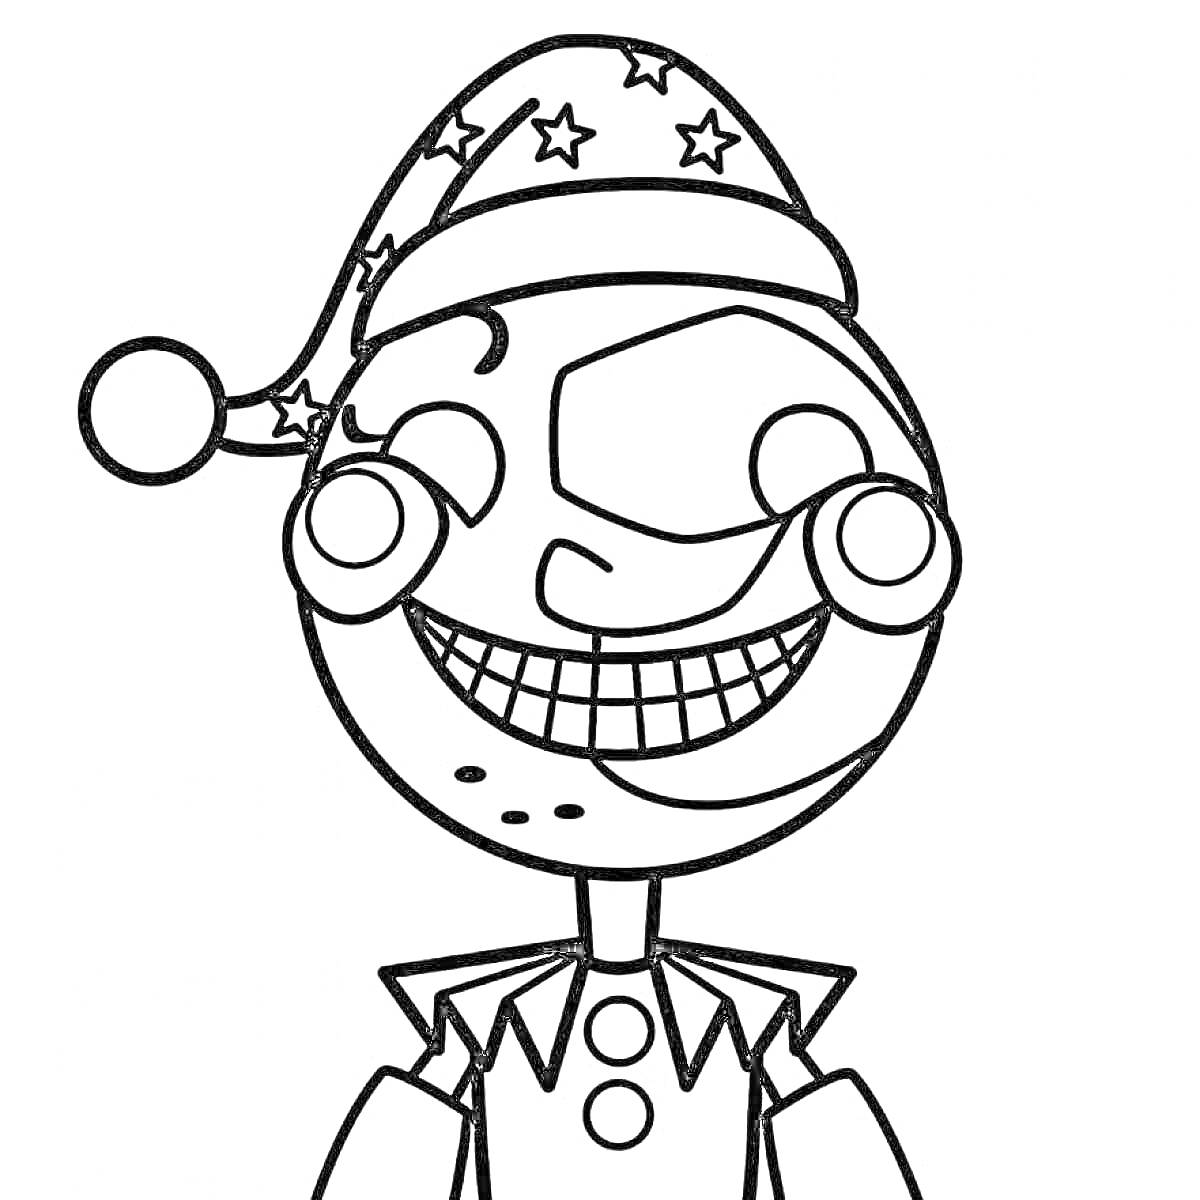 Раскраска Клоун-аниматроник в шляпе с звездами и широким ртом